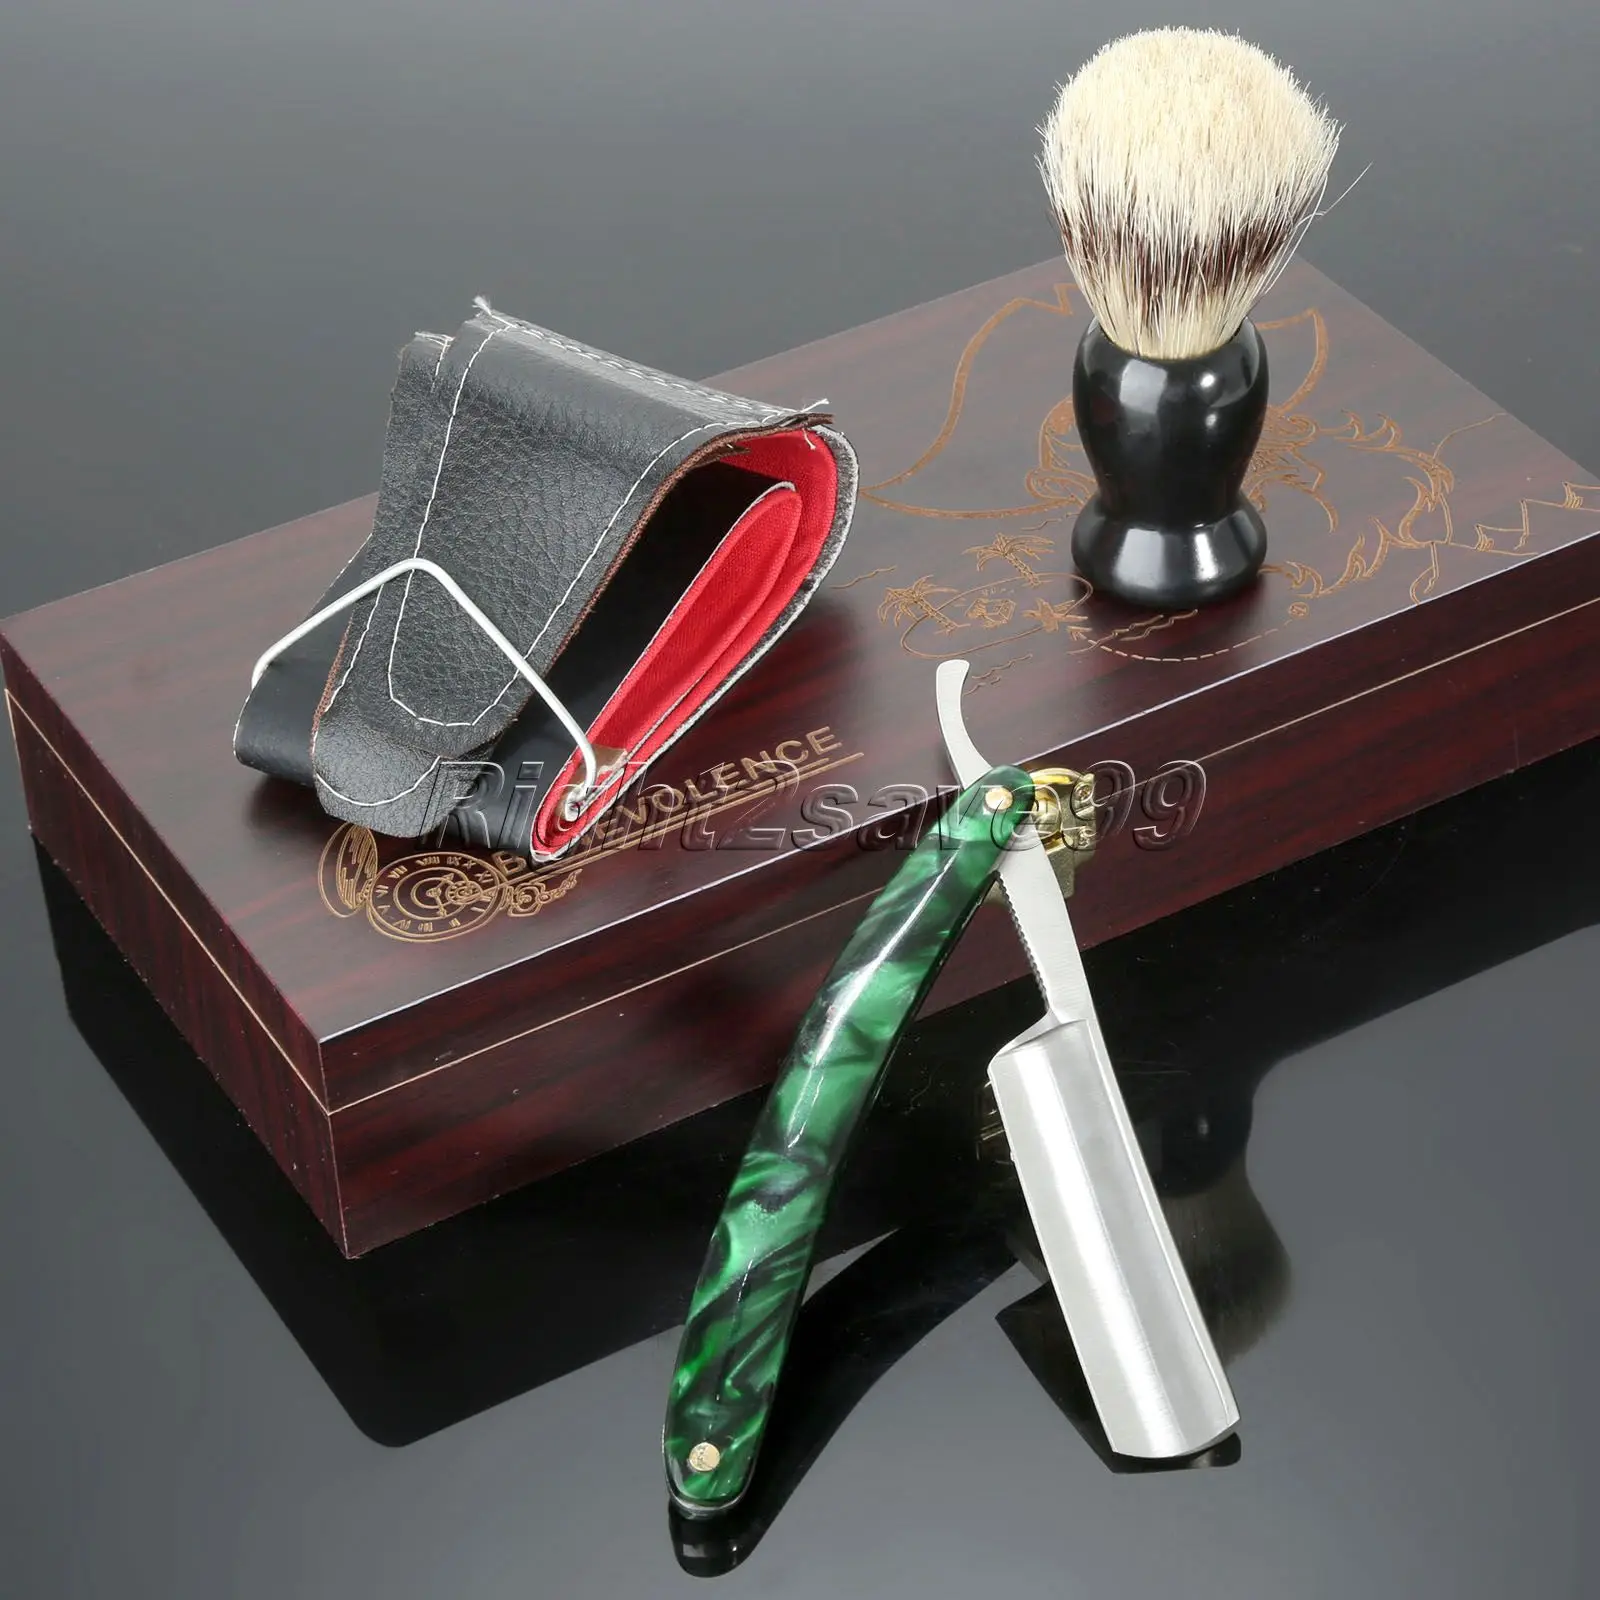 Новое поступление 4 в 1 мужской парикмахерский бритвенный набор прямая бритва+ кожаный ремешок+ щетка для бритья+ деревянная коробка для подарочный набор для мужчин